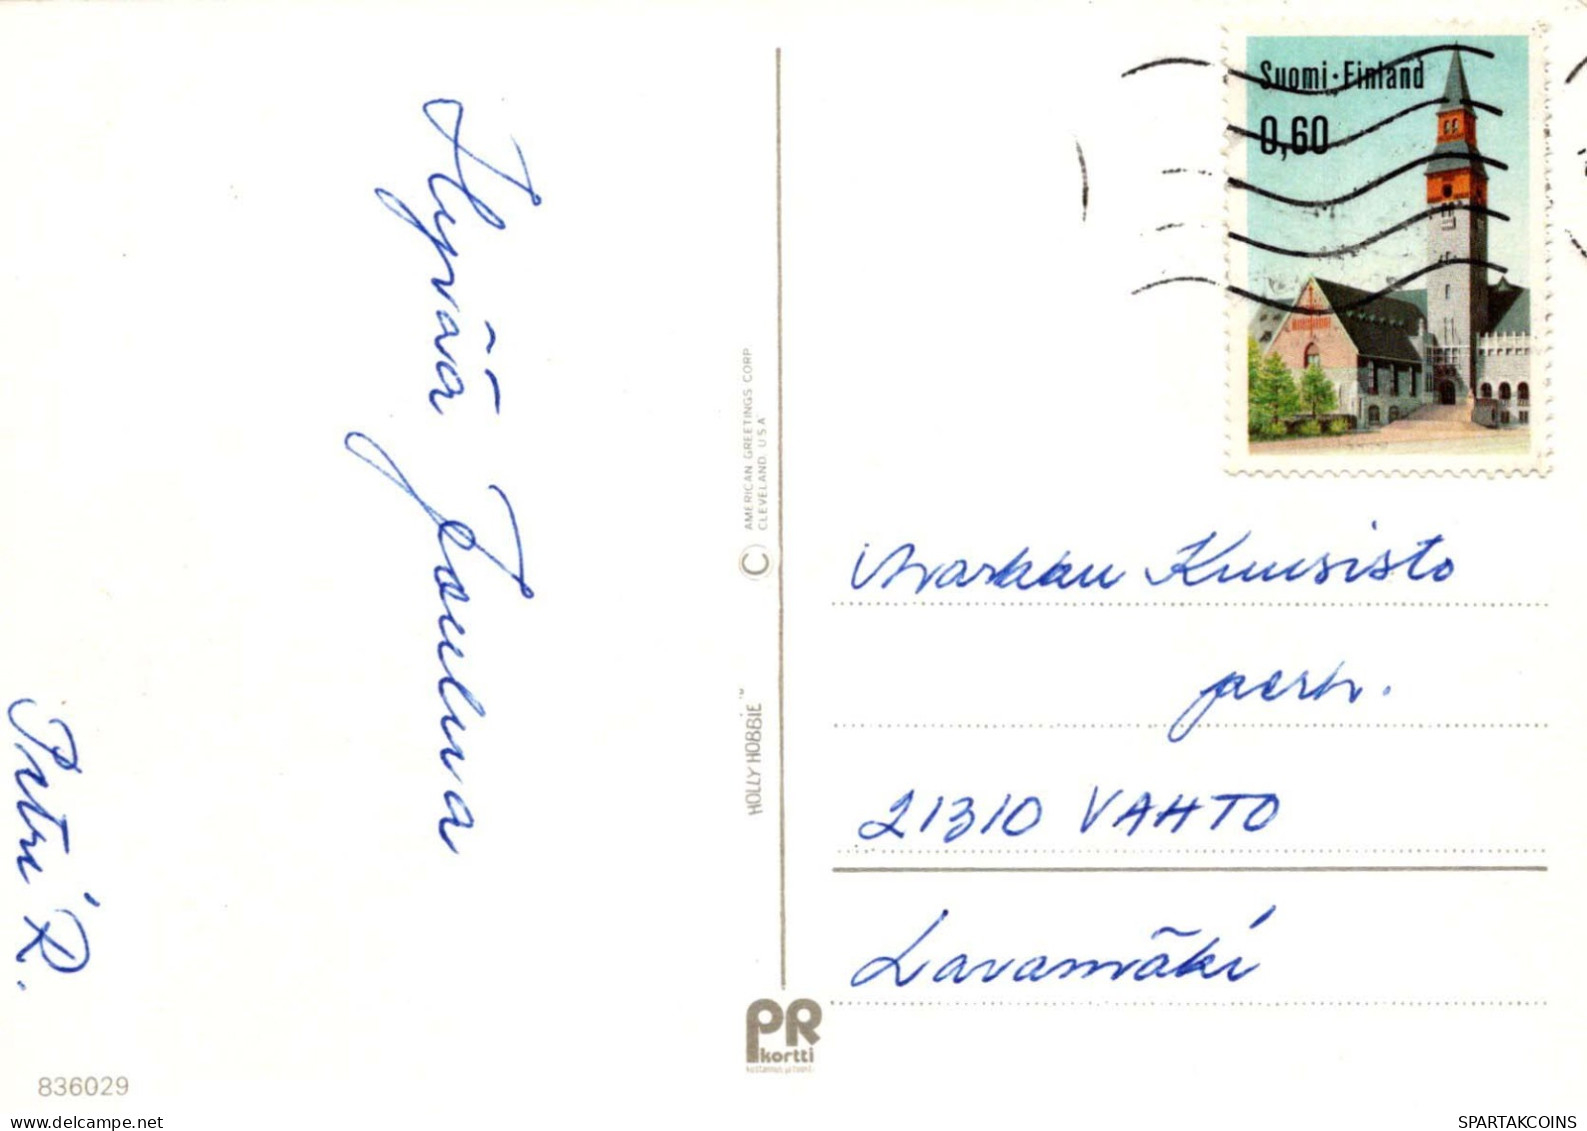 KINDER Szene Landschaft Vintage Ansichtskarte Postkarte CPSM #PBB391.DE - Scenes & Landscapes